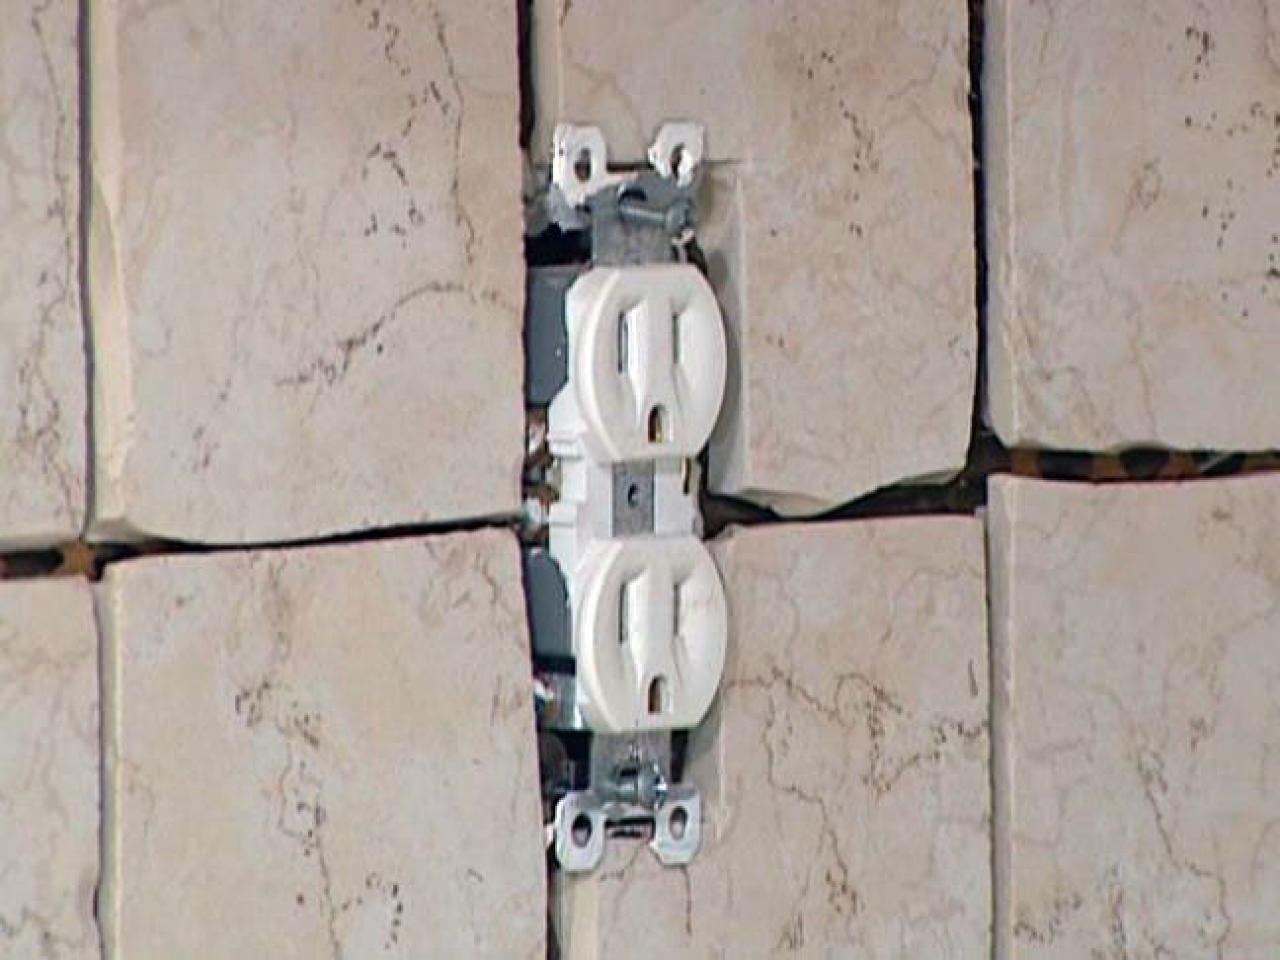 How do you design tile backsplashes around outlets?